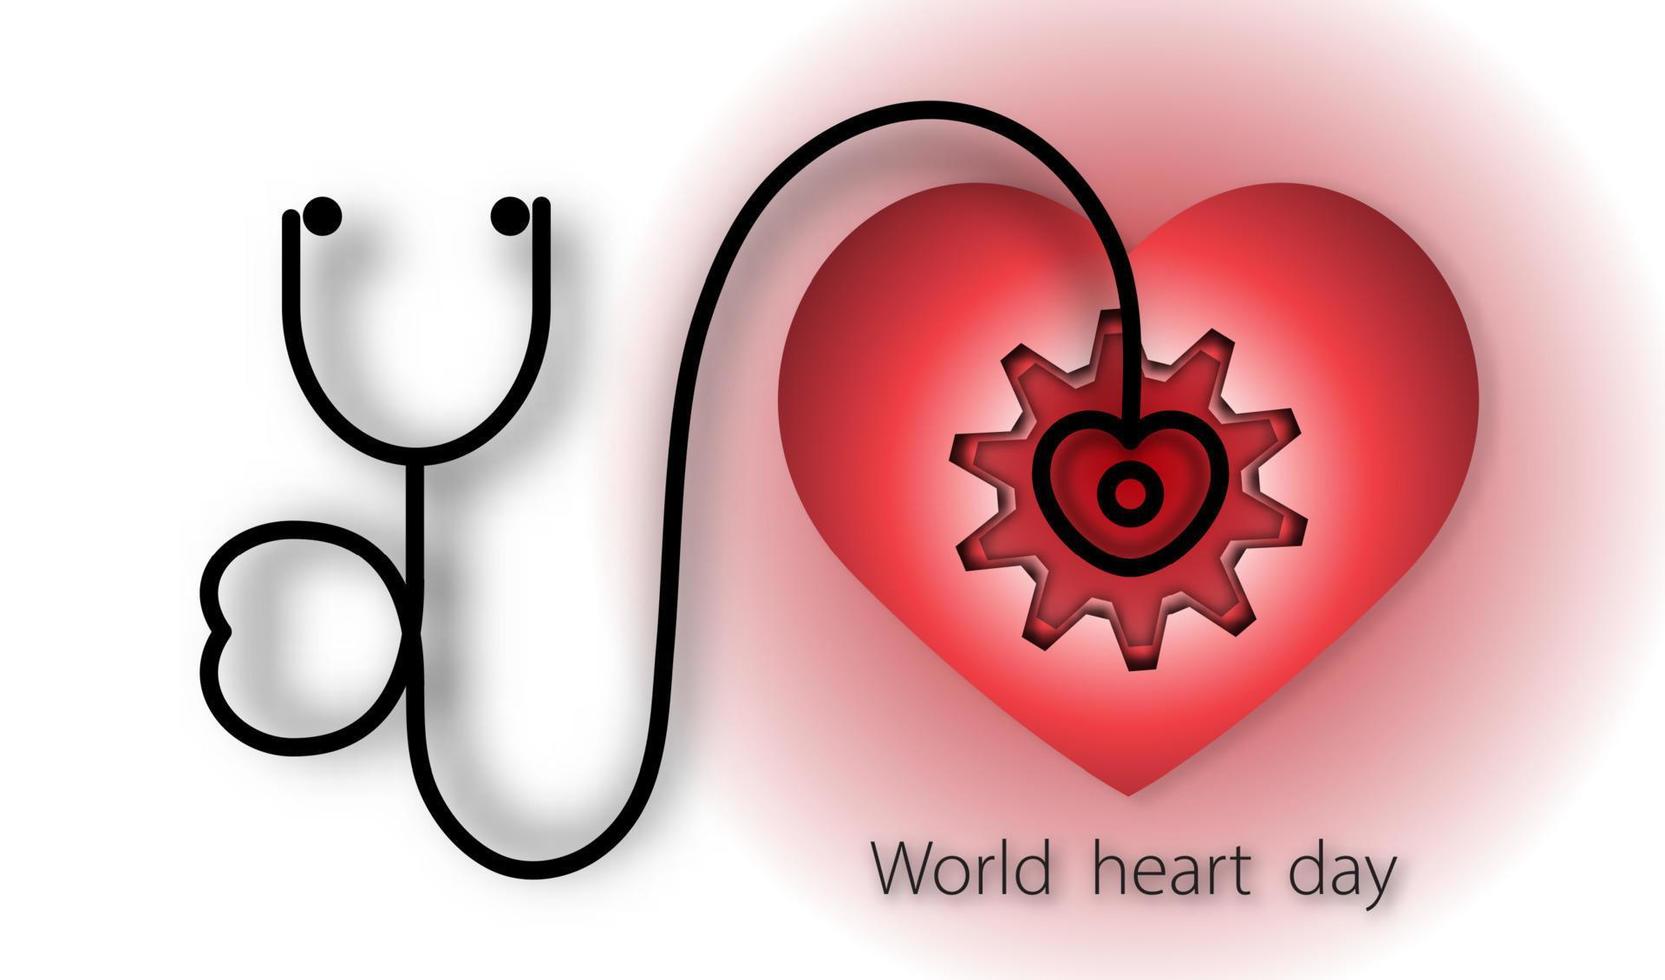 wereld hart dag met hart en stethoscoop en versnelling op rode achtergrond van papier kunststijl, vector of illustratie met gezondheid liefde concept